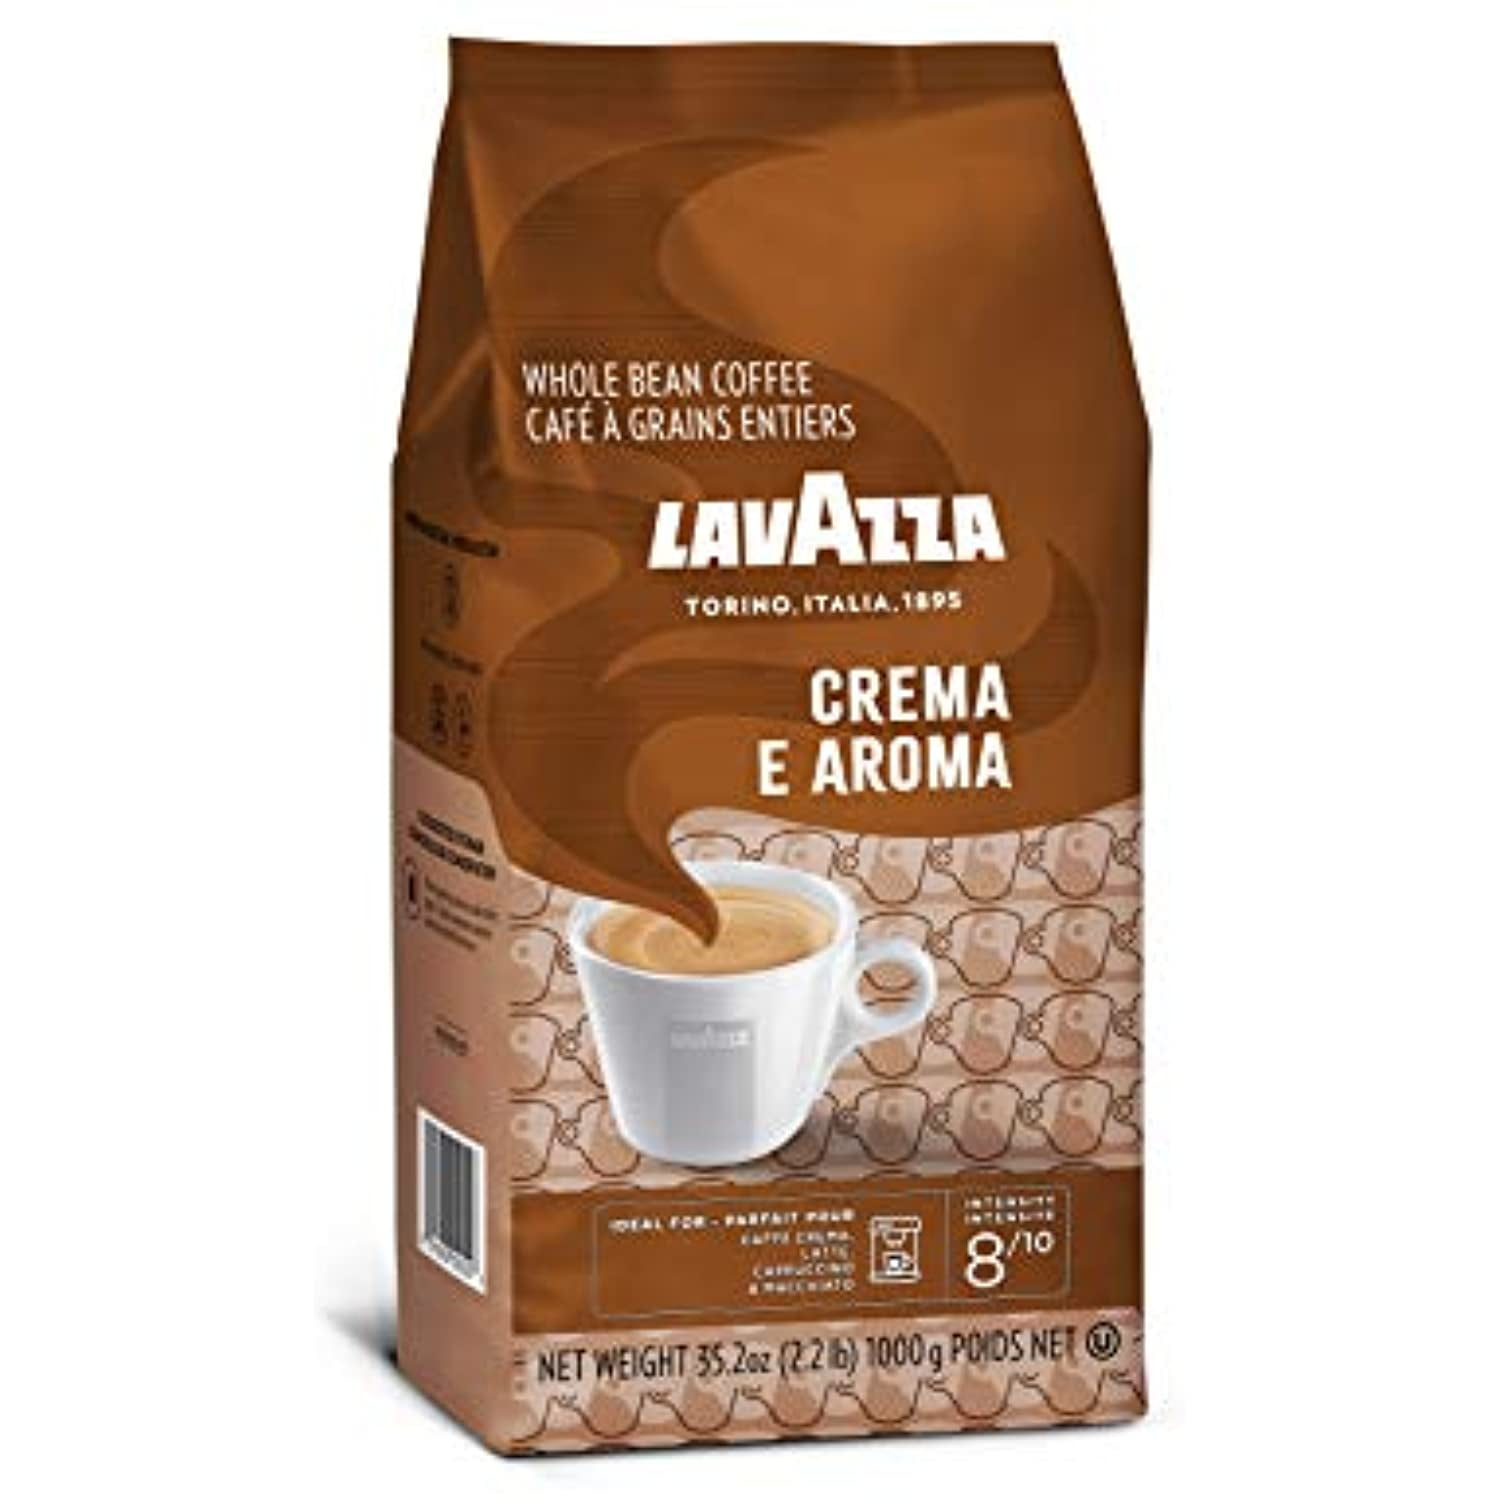 Lavazza Crema E Aroma - seulement 14,99 € chez